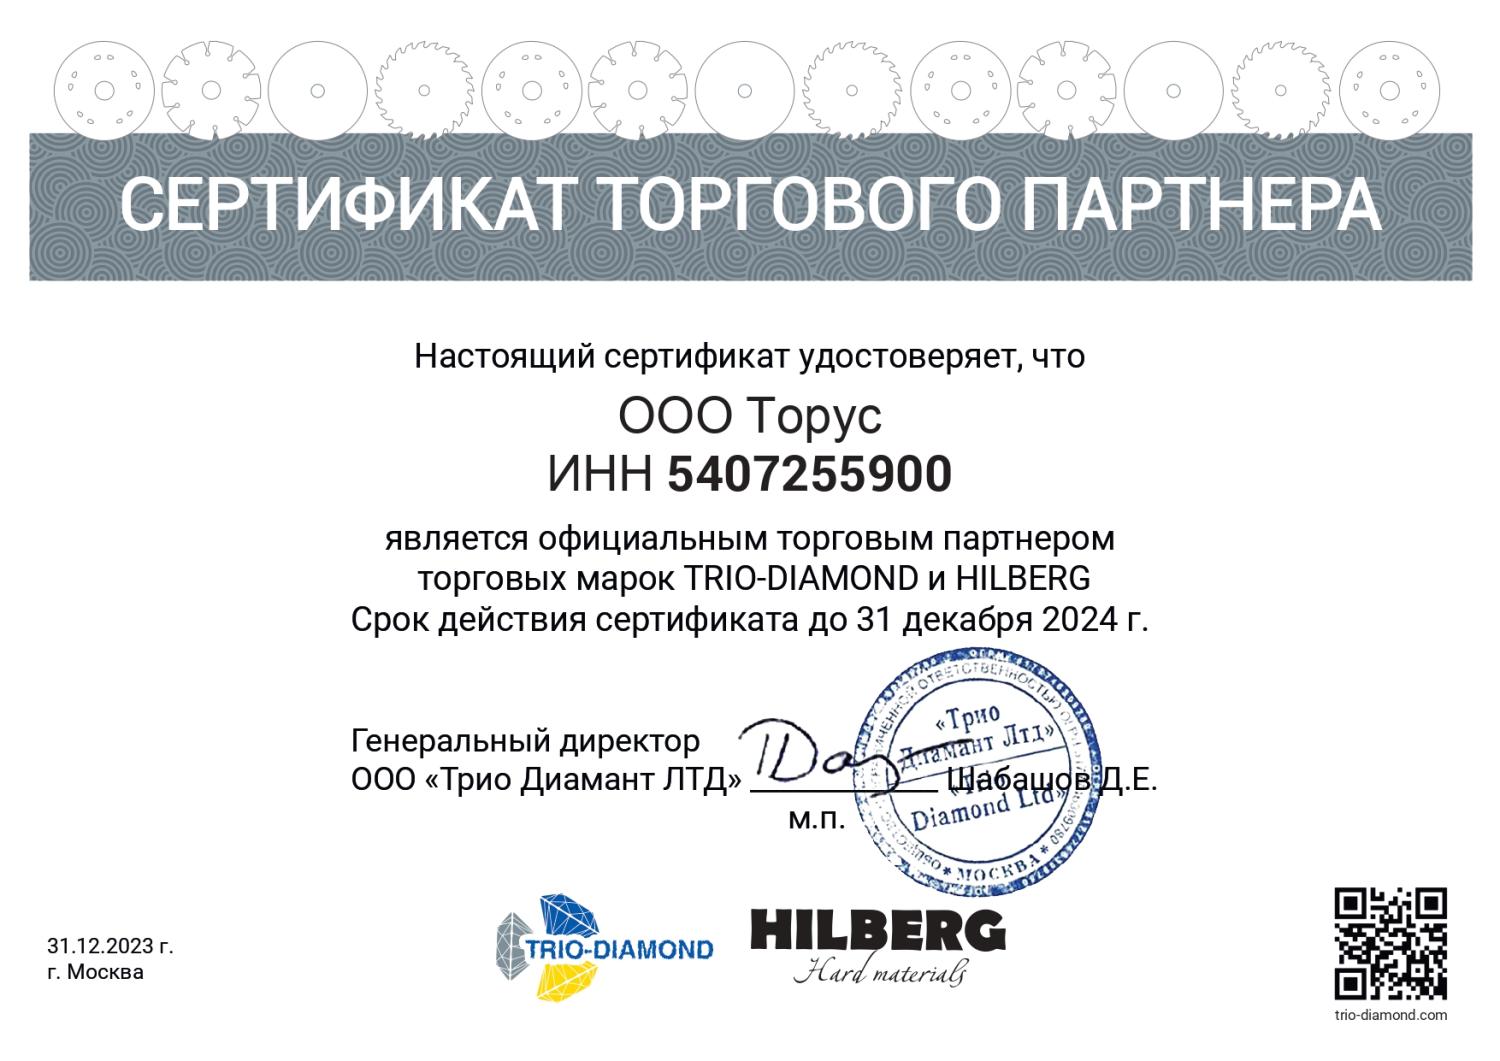 Сертификат дилера TRIO-DIAMOND и HILBERG